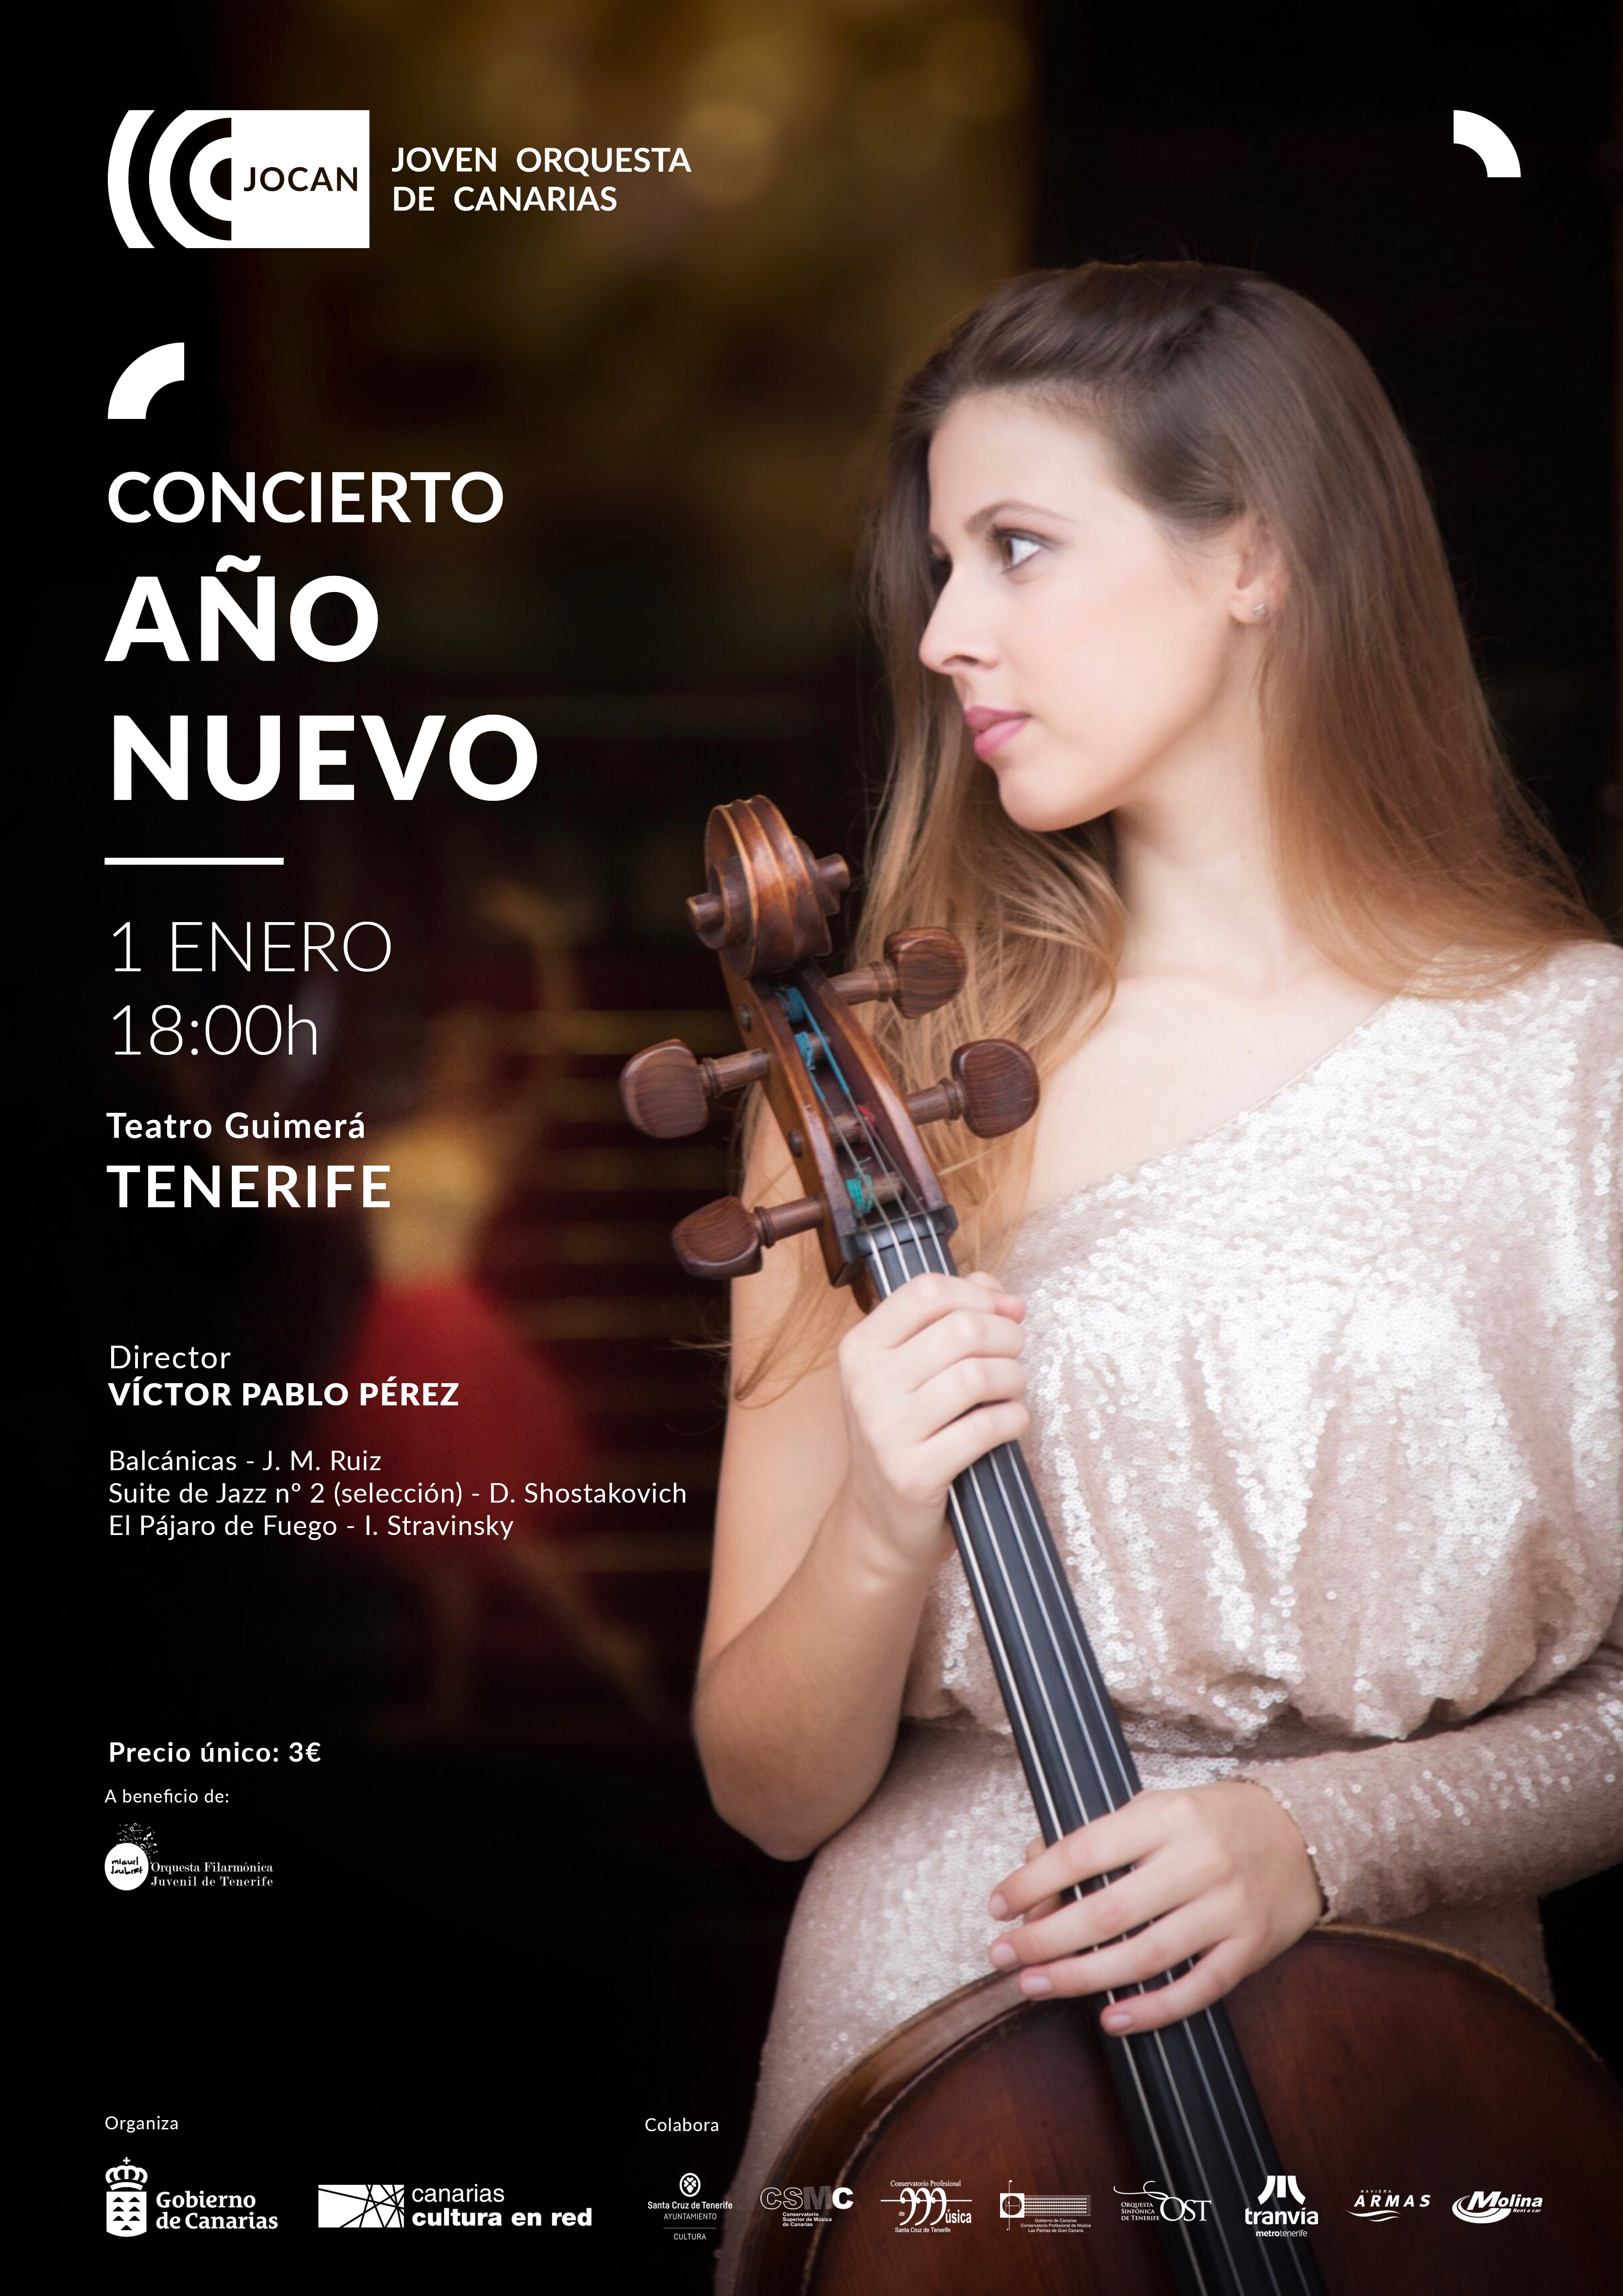 Cartel concierto Año Nuevo JOCAN Tenerife